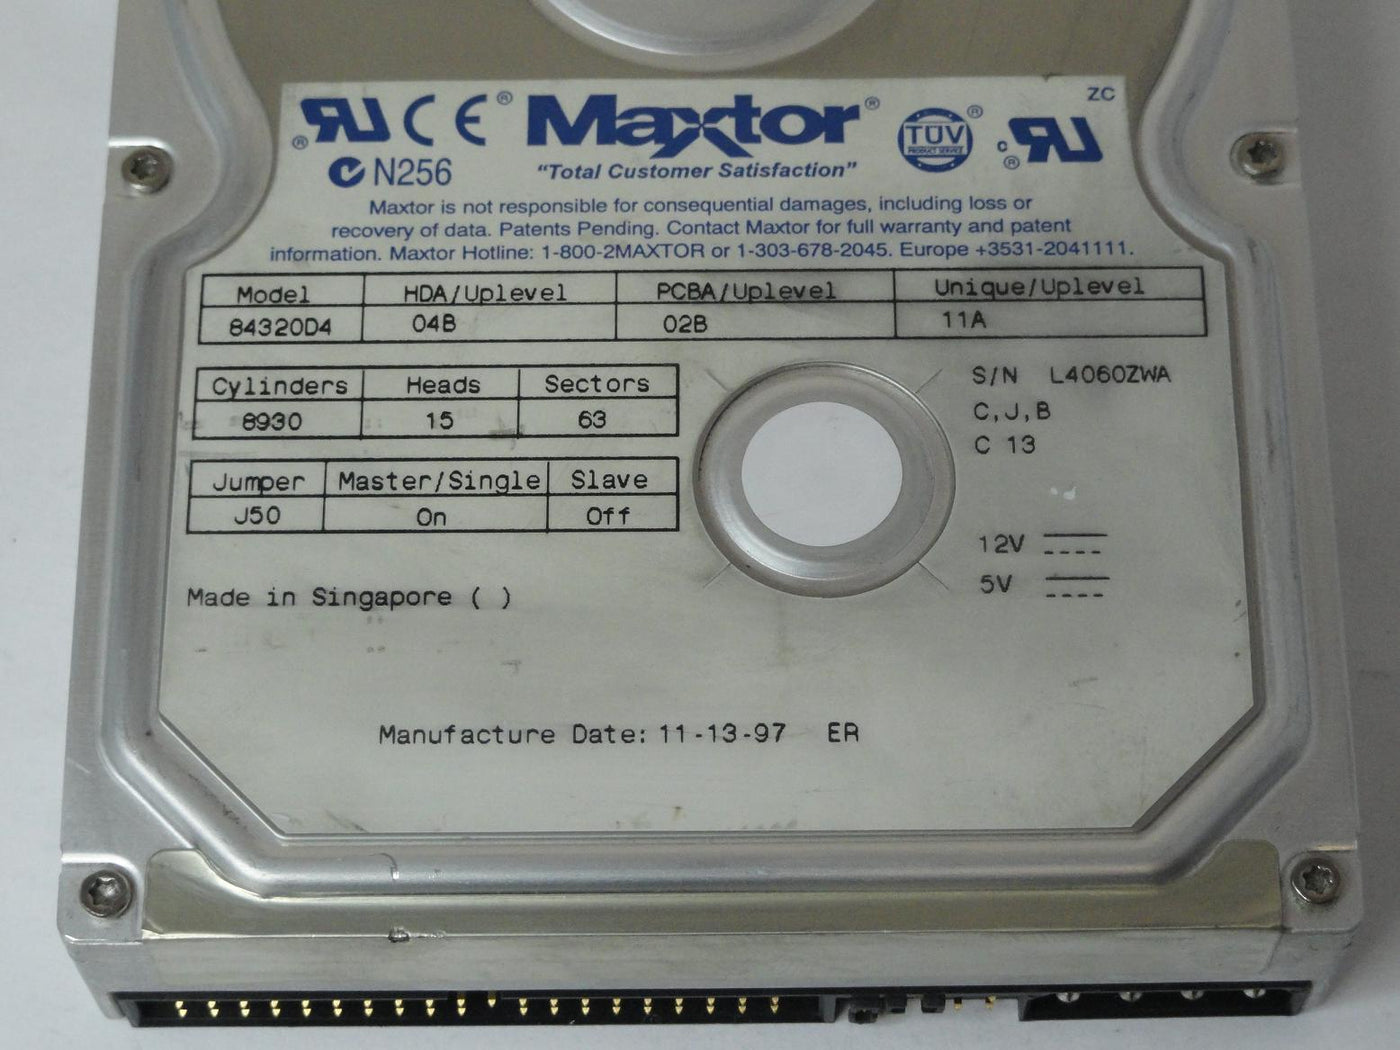 MC1938_84320D4_Maxtor 4.3GB IDE 5400rpm 3.5" HDD - Image3